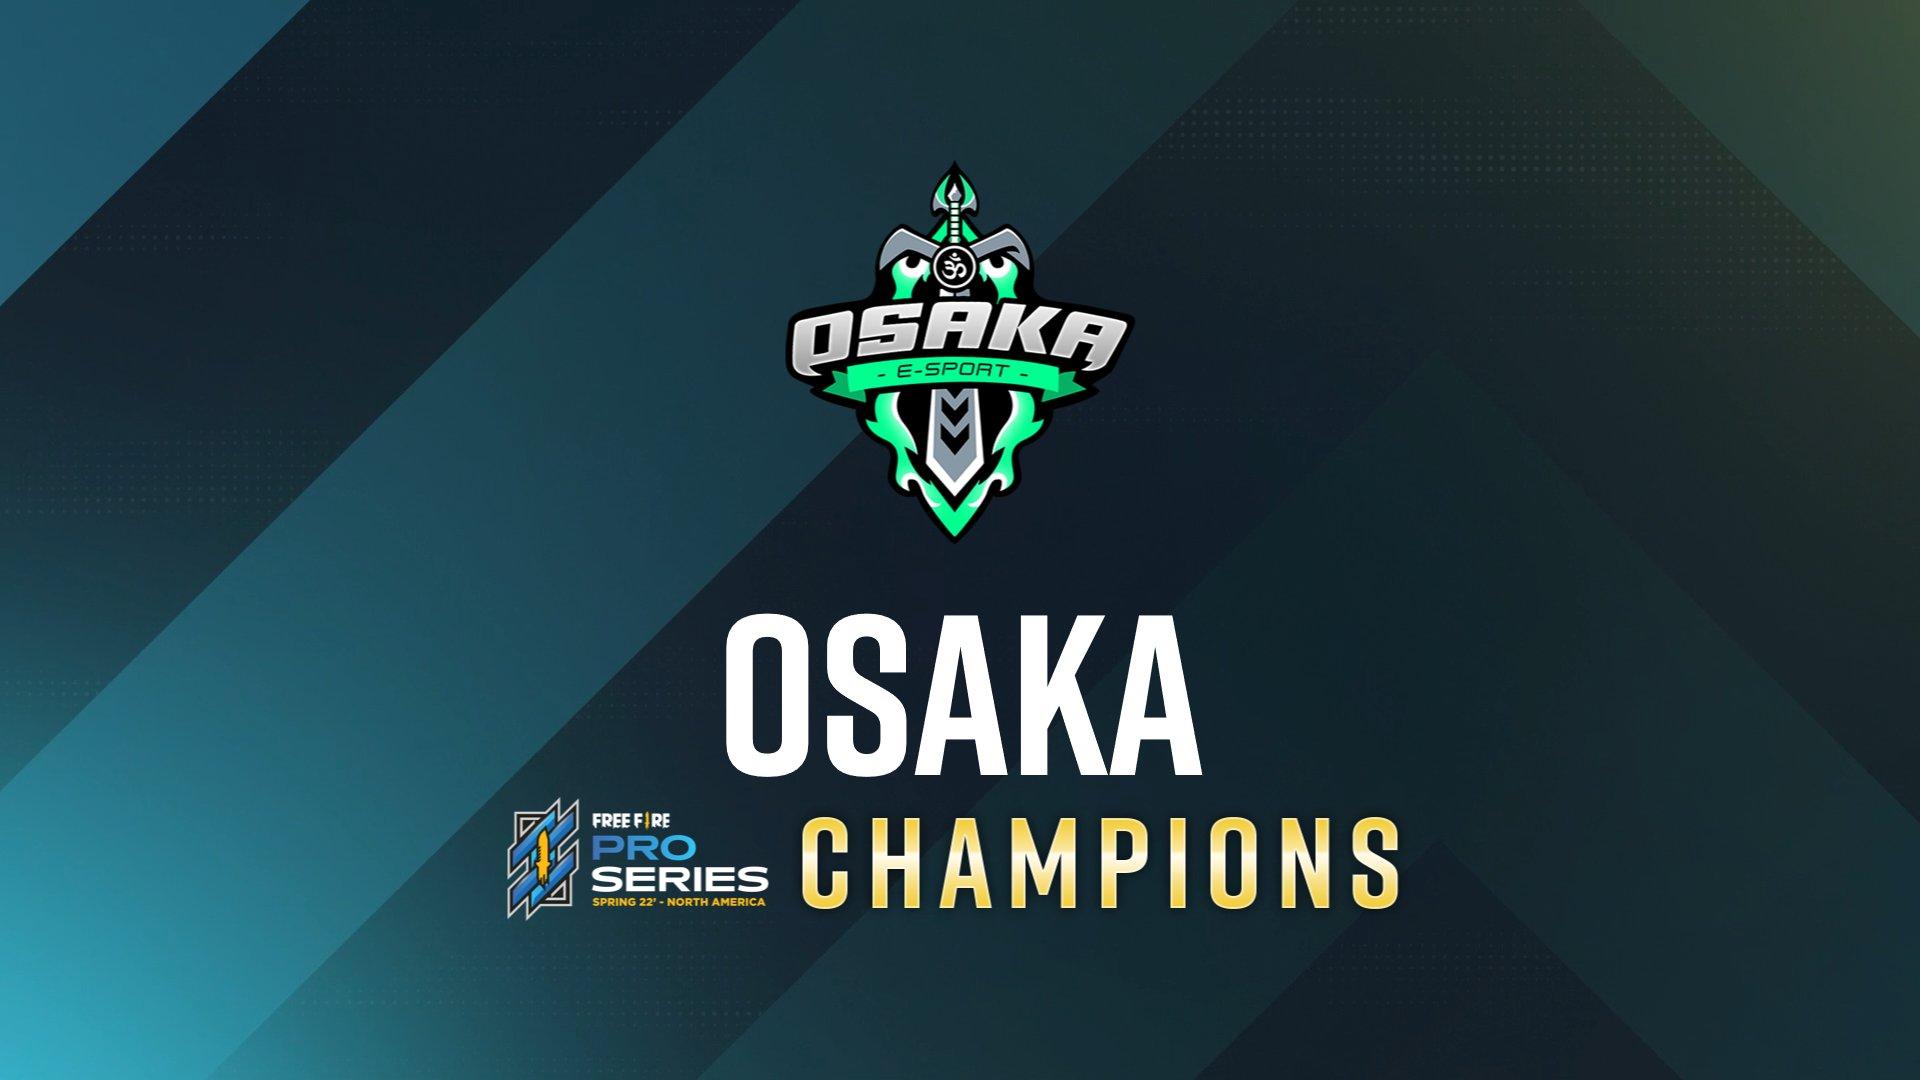 Osaka vence o Free Fire Pro Series nos EUA e se classifica para o mundial